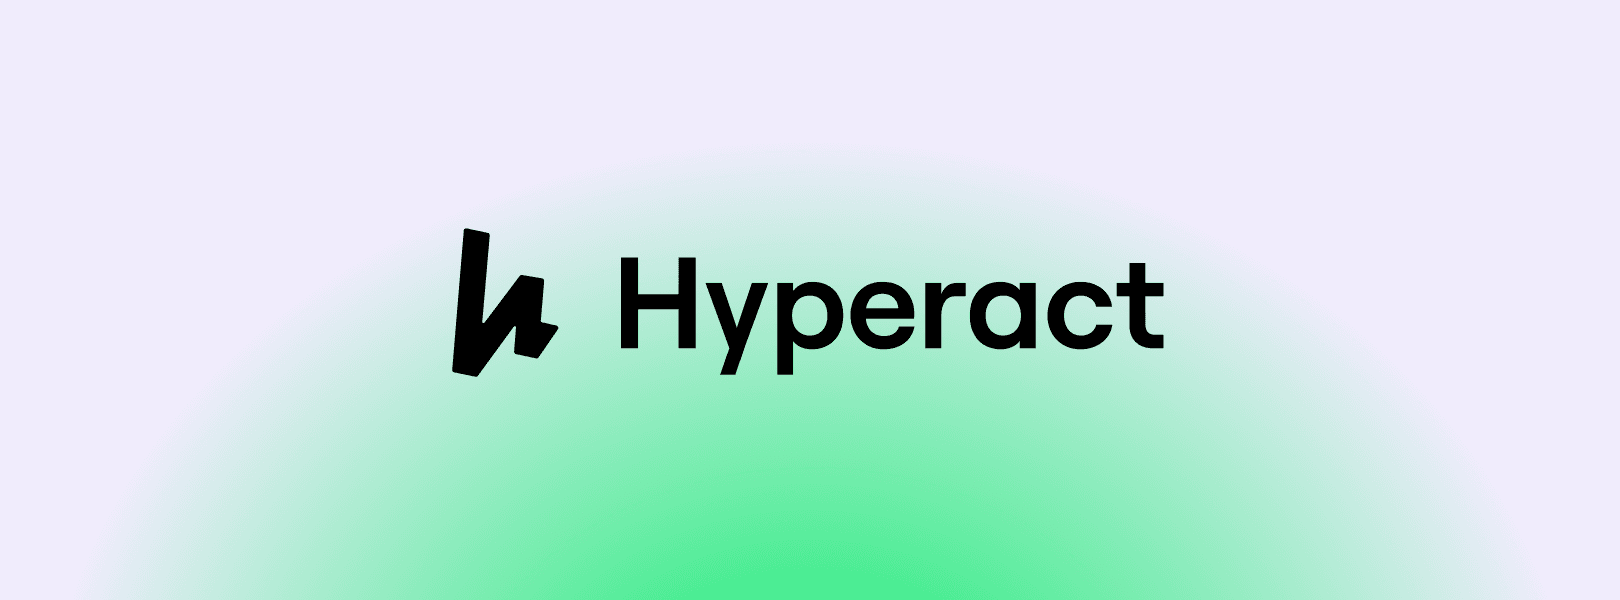 Logotipo de Hyperact